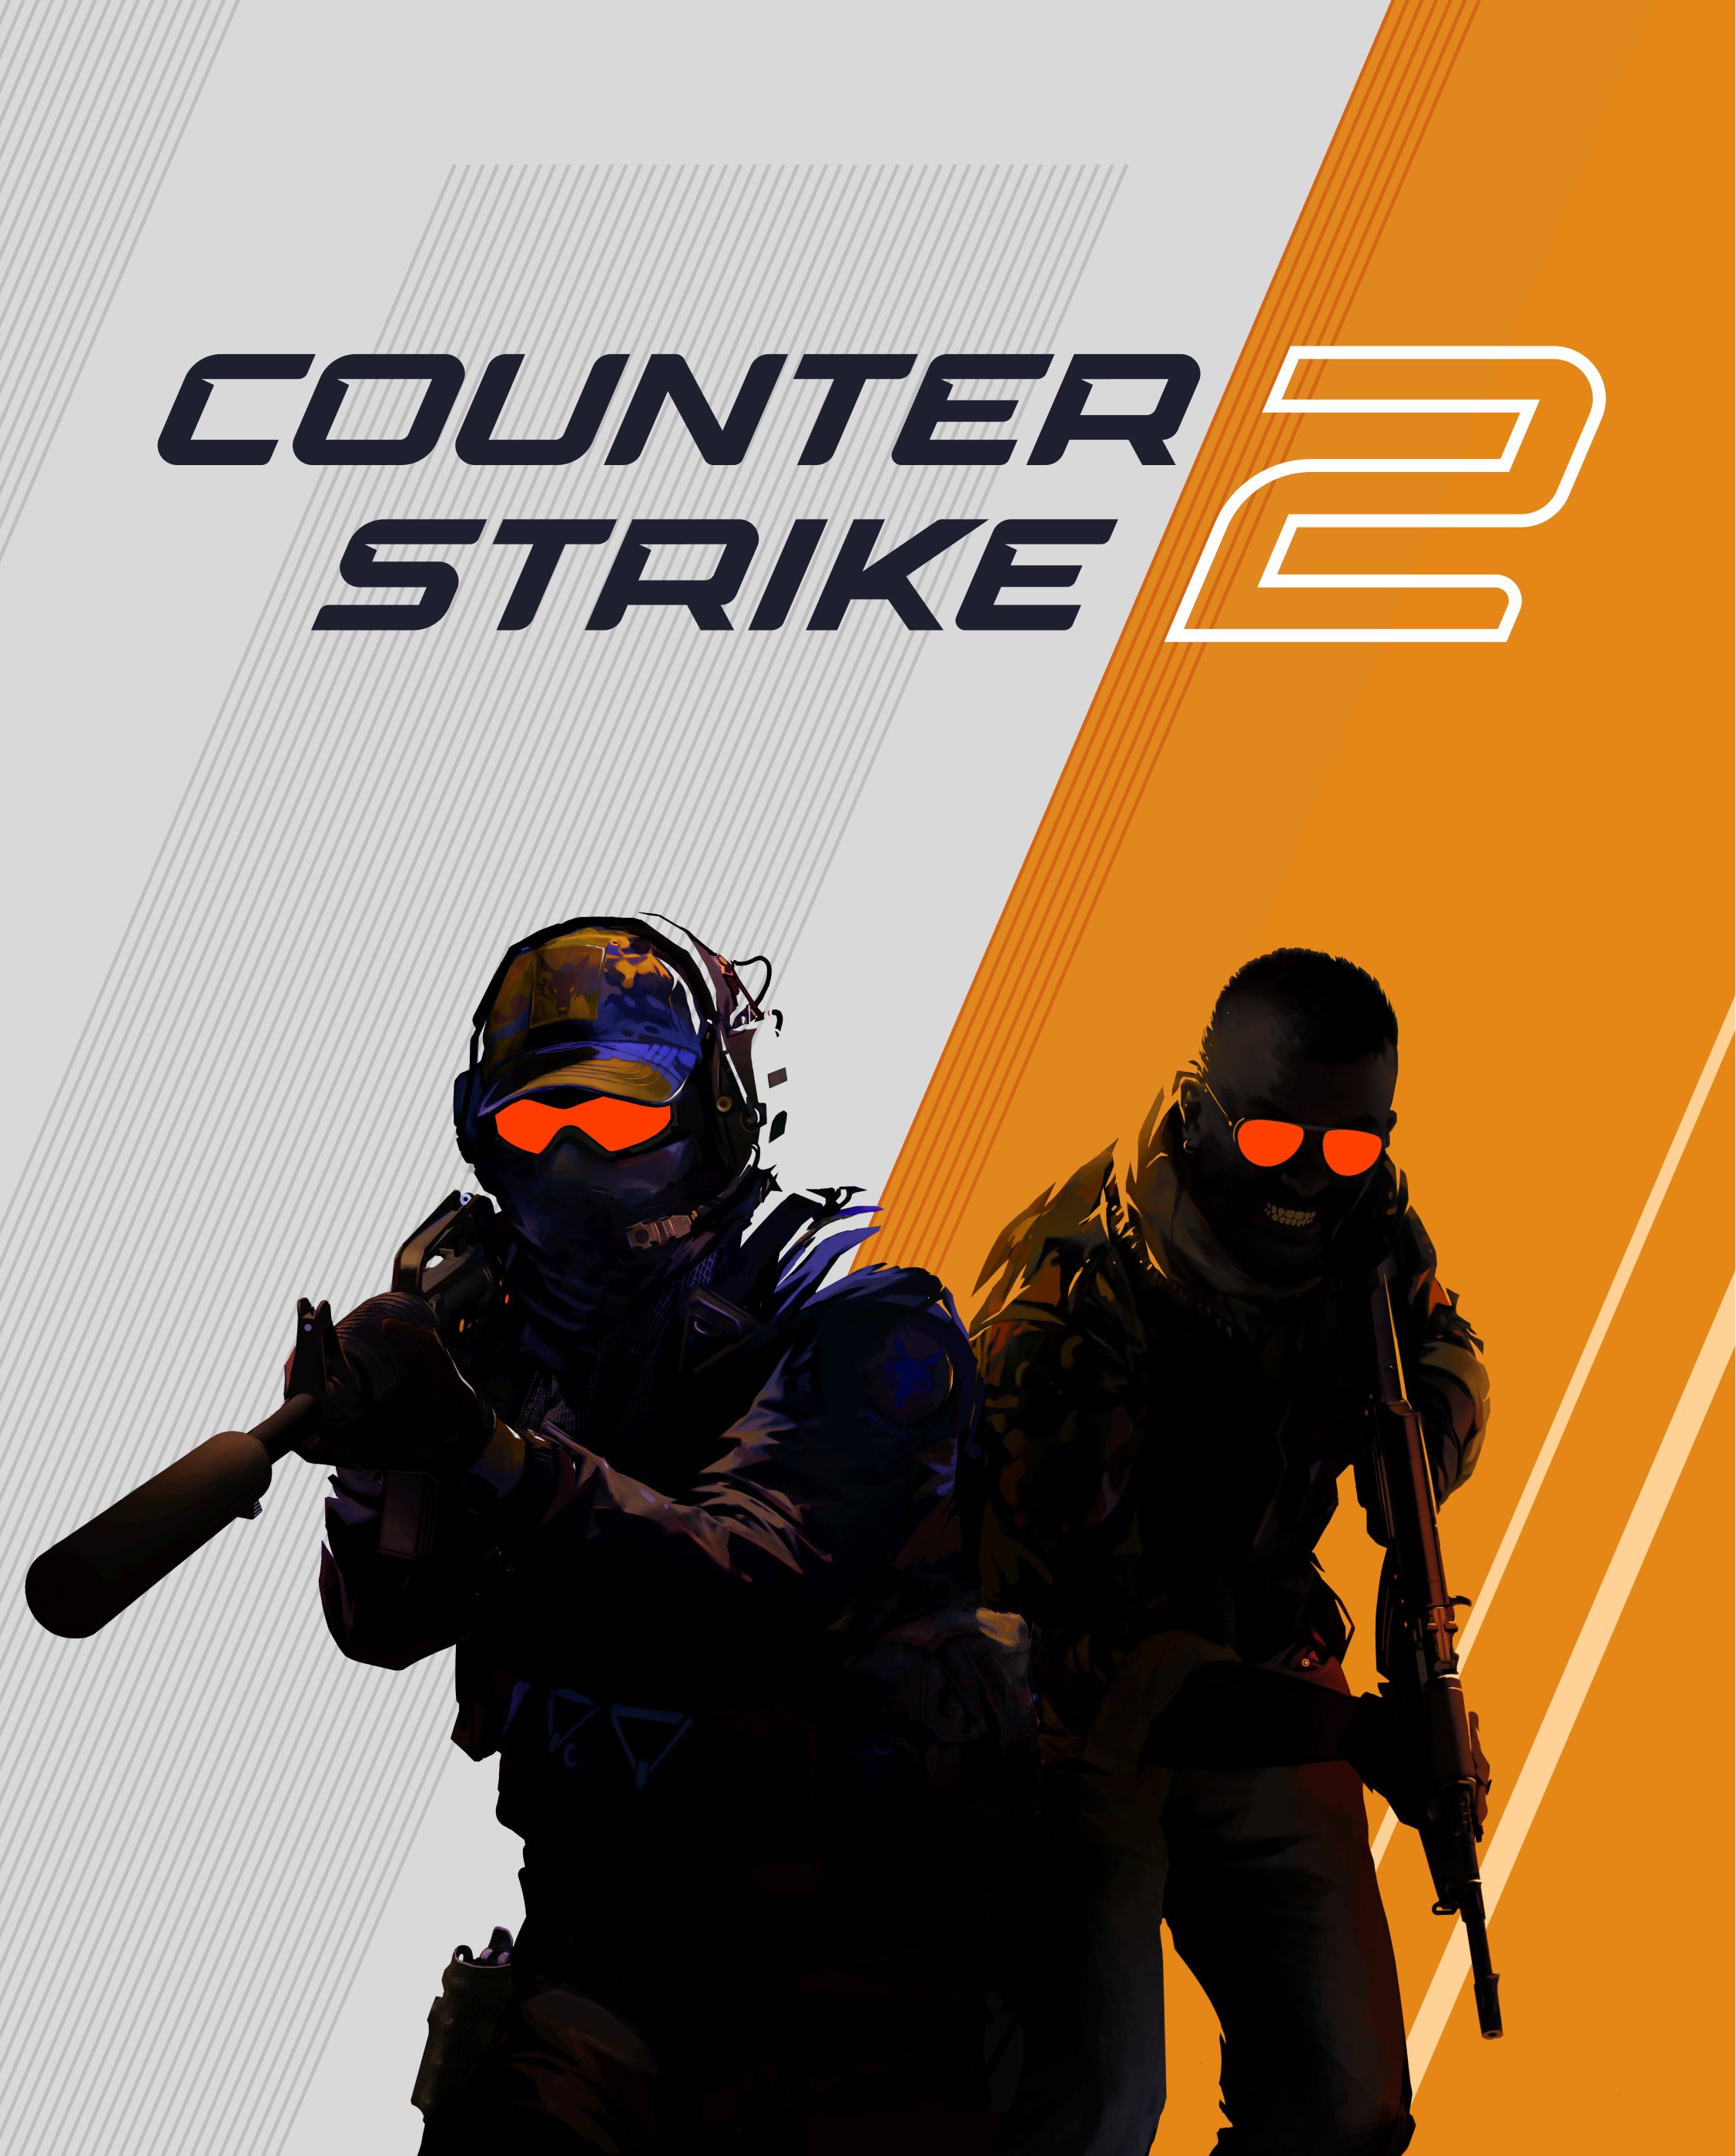 Counter-Strike 2' será lançado em 2023 - 22/03/2023 - Ilustrada - Folha